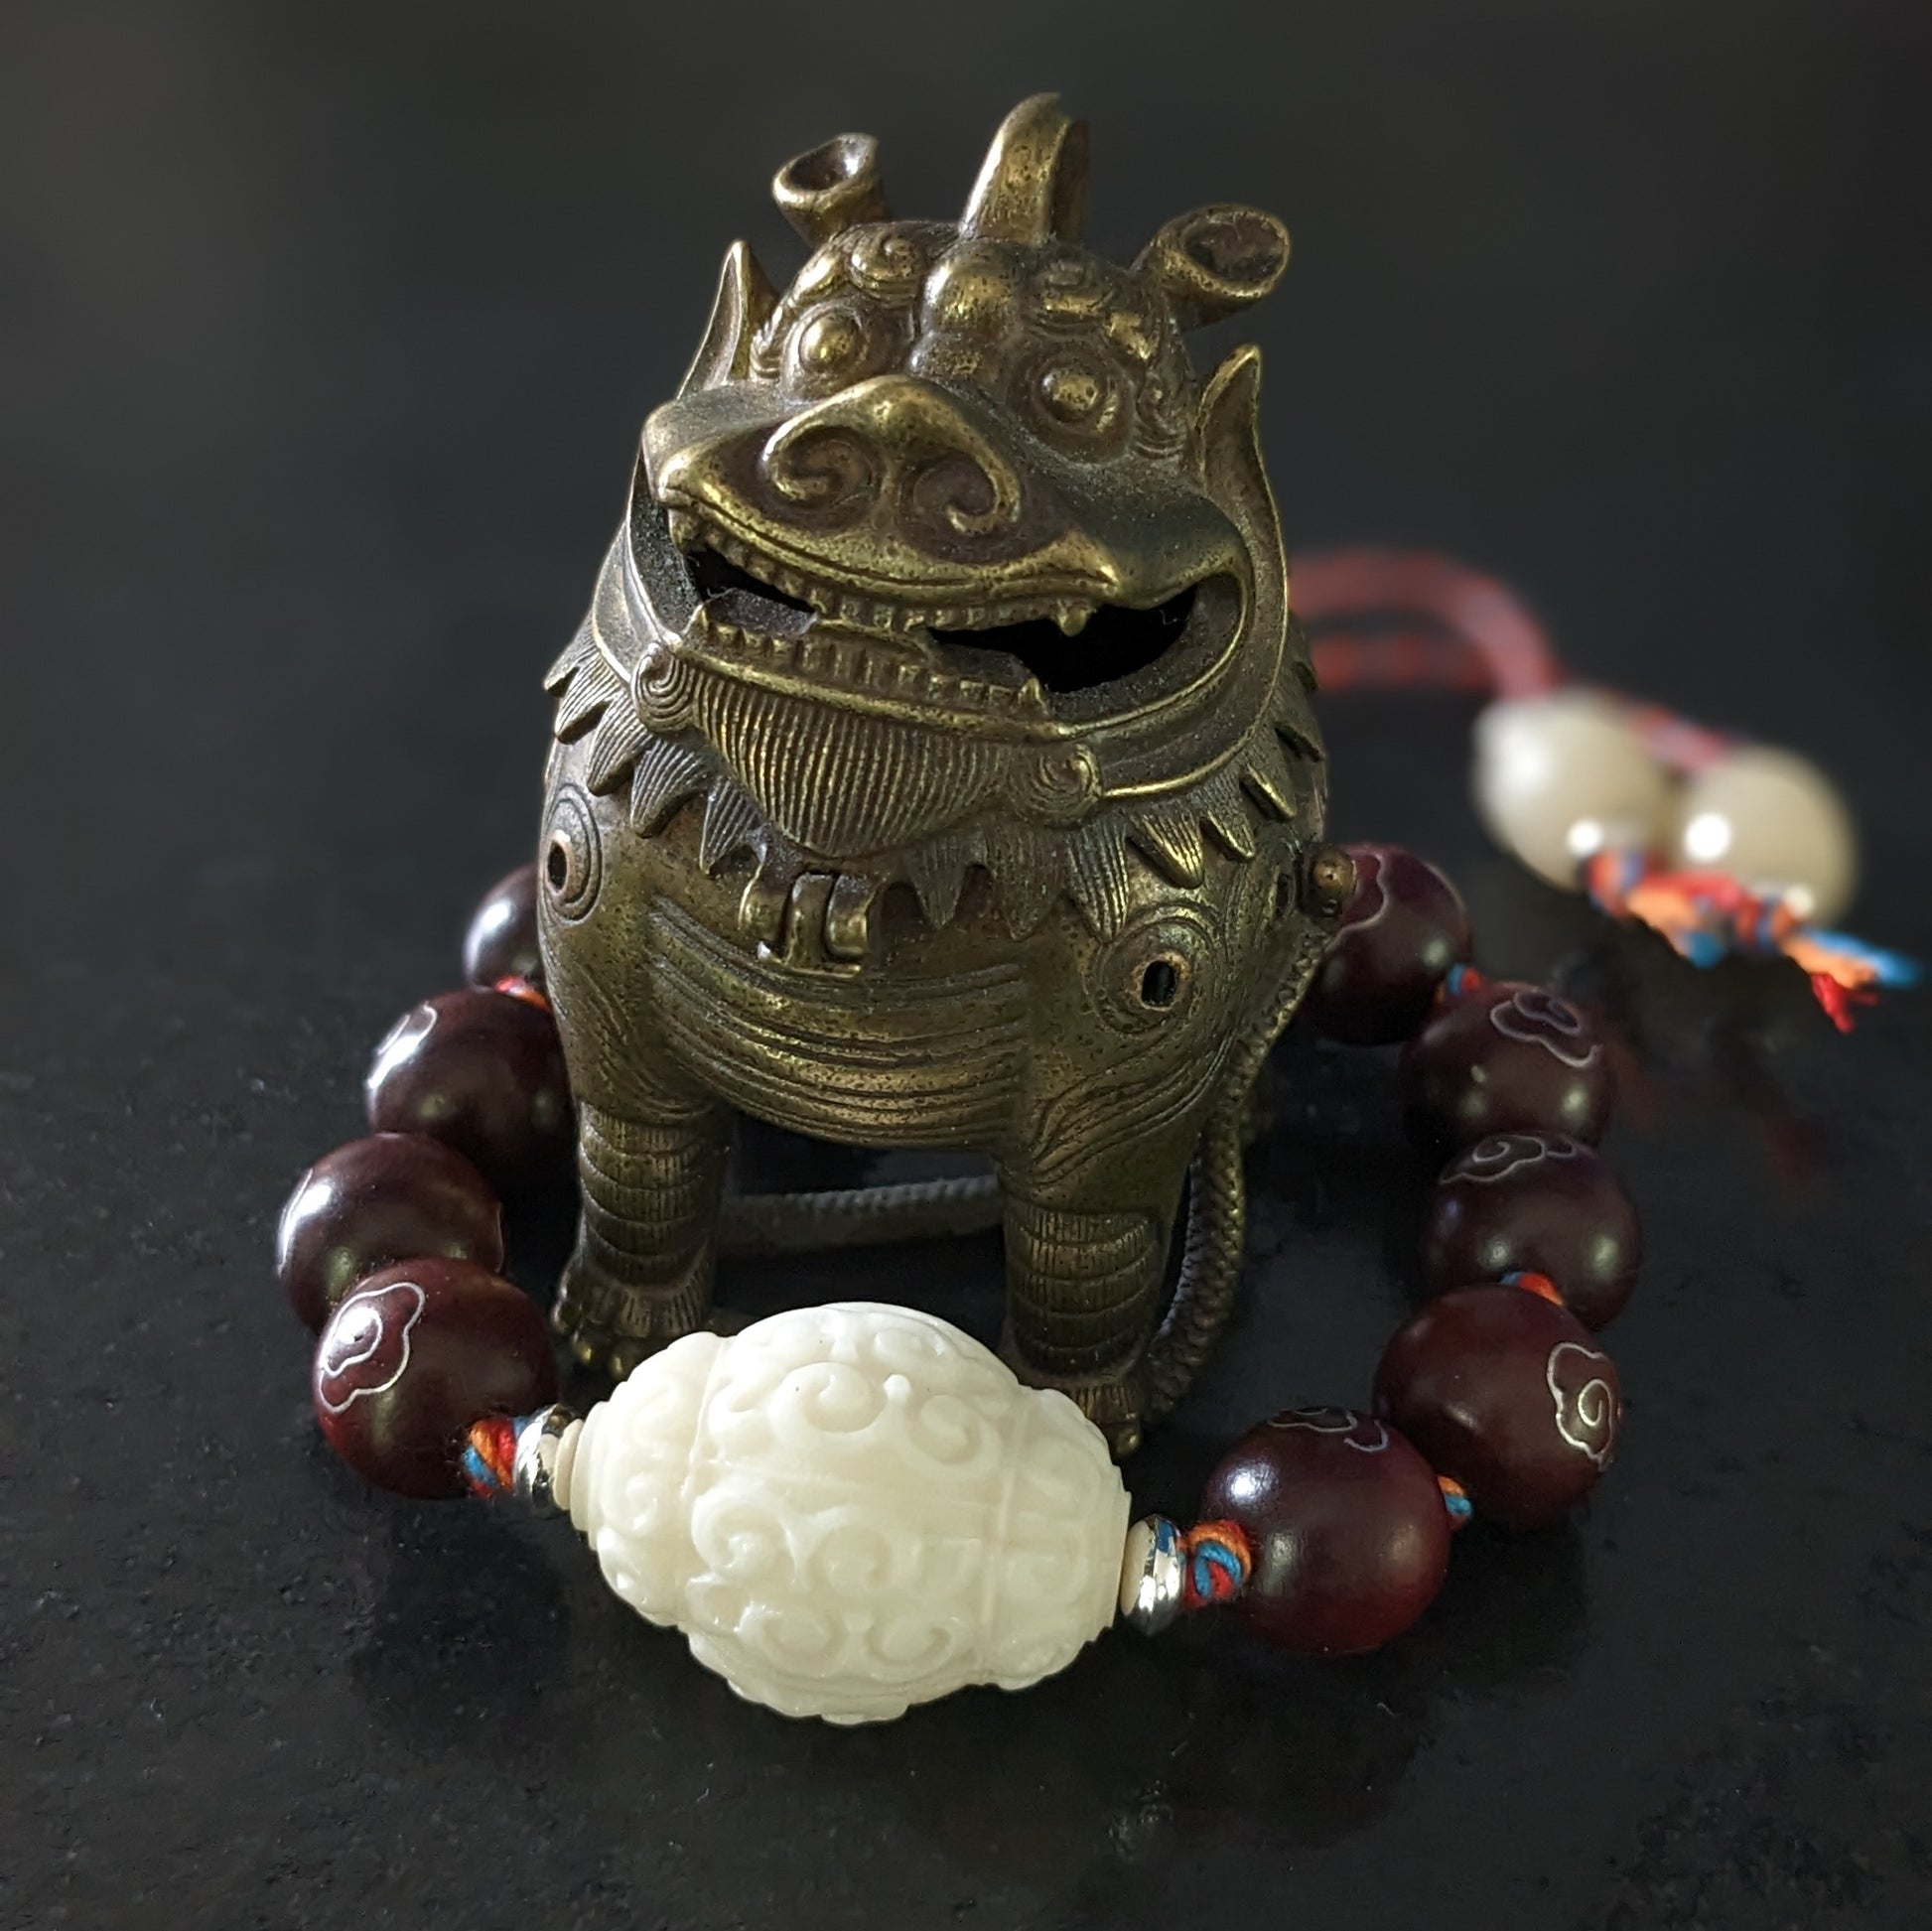 Découvrez la magie et la spiritualité de mes bracelets de perles de prière fabriqués à la main. Chaque bracelet est réalisé avec amour, en incorporant des perles de prière bouddhistes traditionnelles et des pierres fines naturelles choisies en fonction de leurs propriétés uniques.